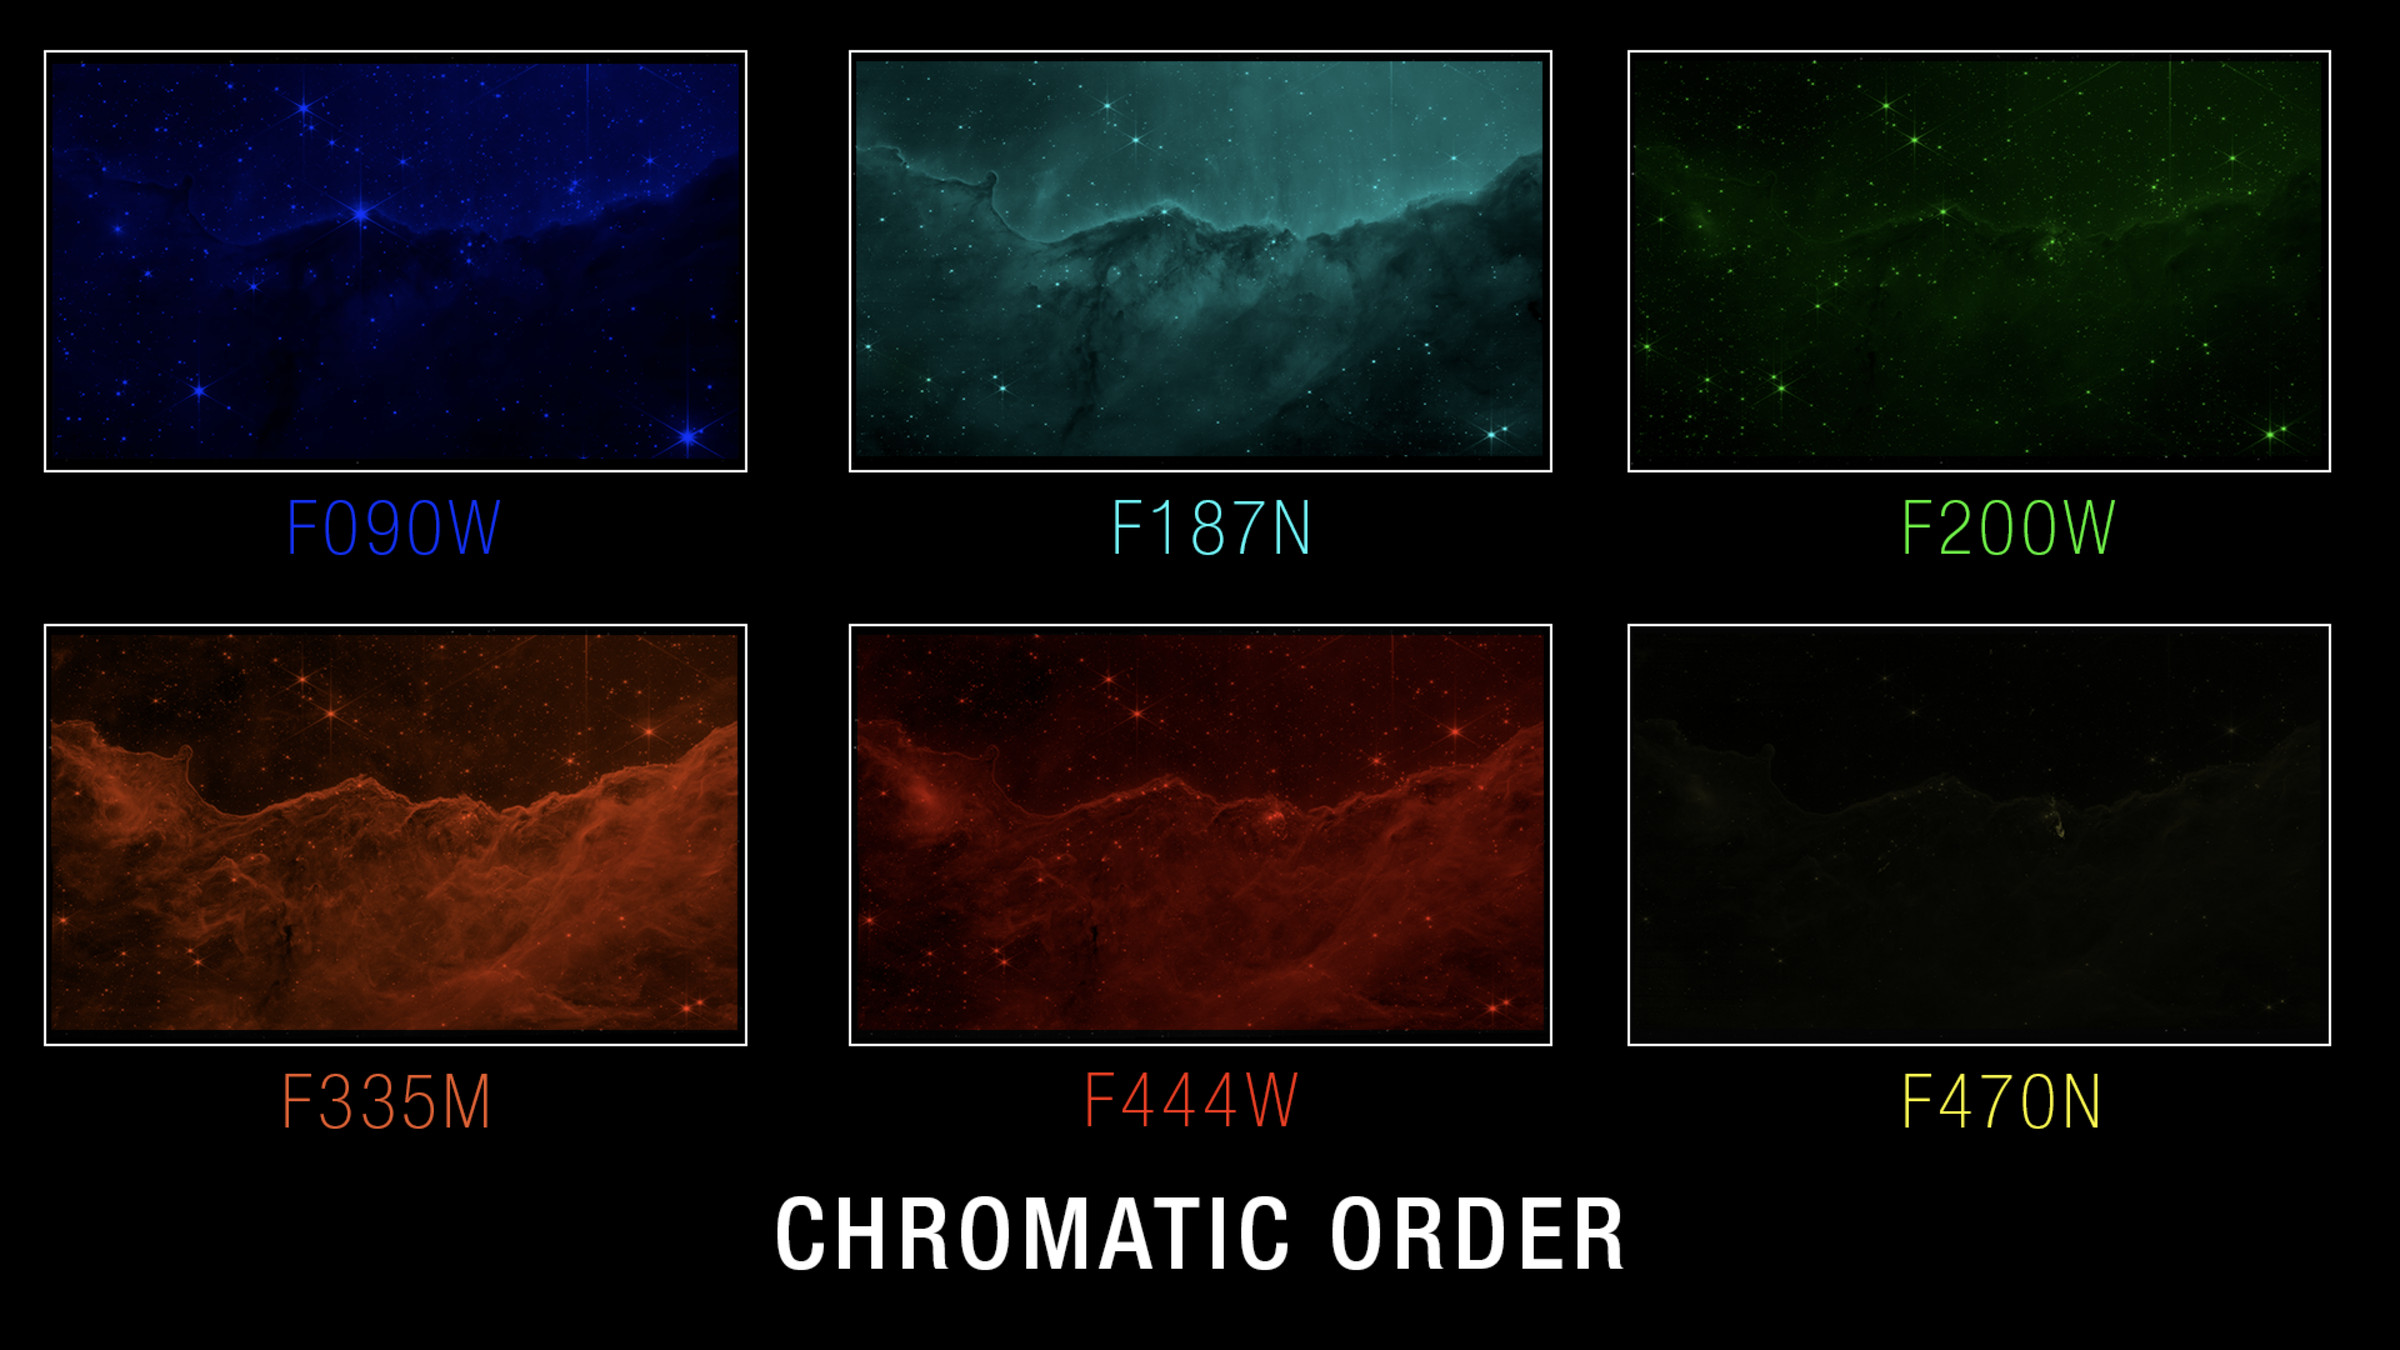 une image de la nébuleuse Carina à six longueurs d'onde différentes, étiquetées 